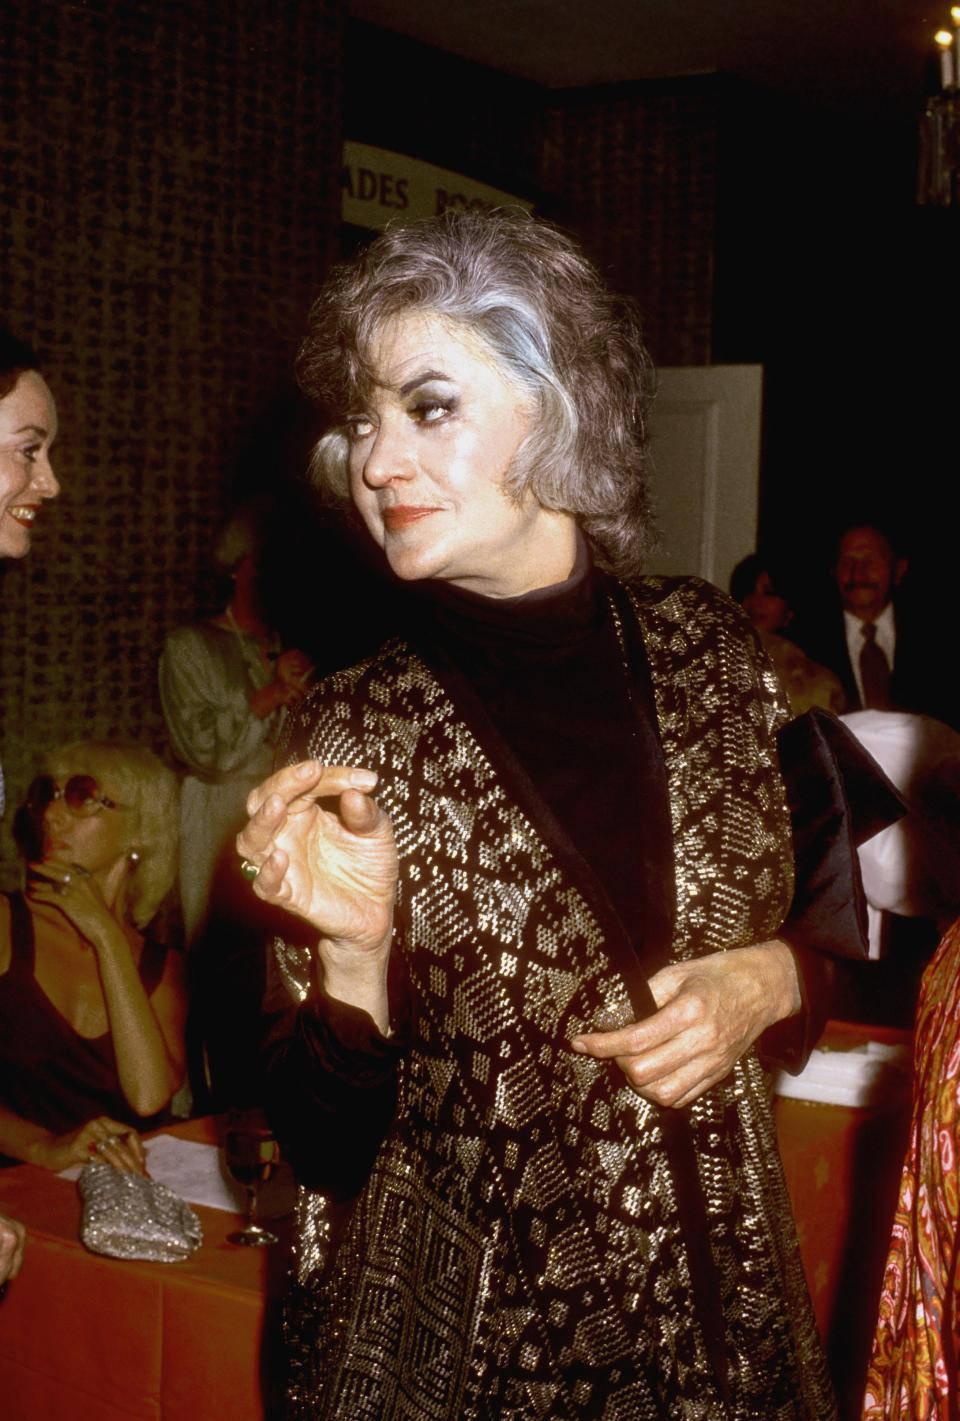 Actrizestadounidense Bea Arthur En Evento En Los Ángeles En 1975 Fondo de pantalla